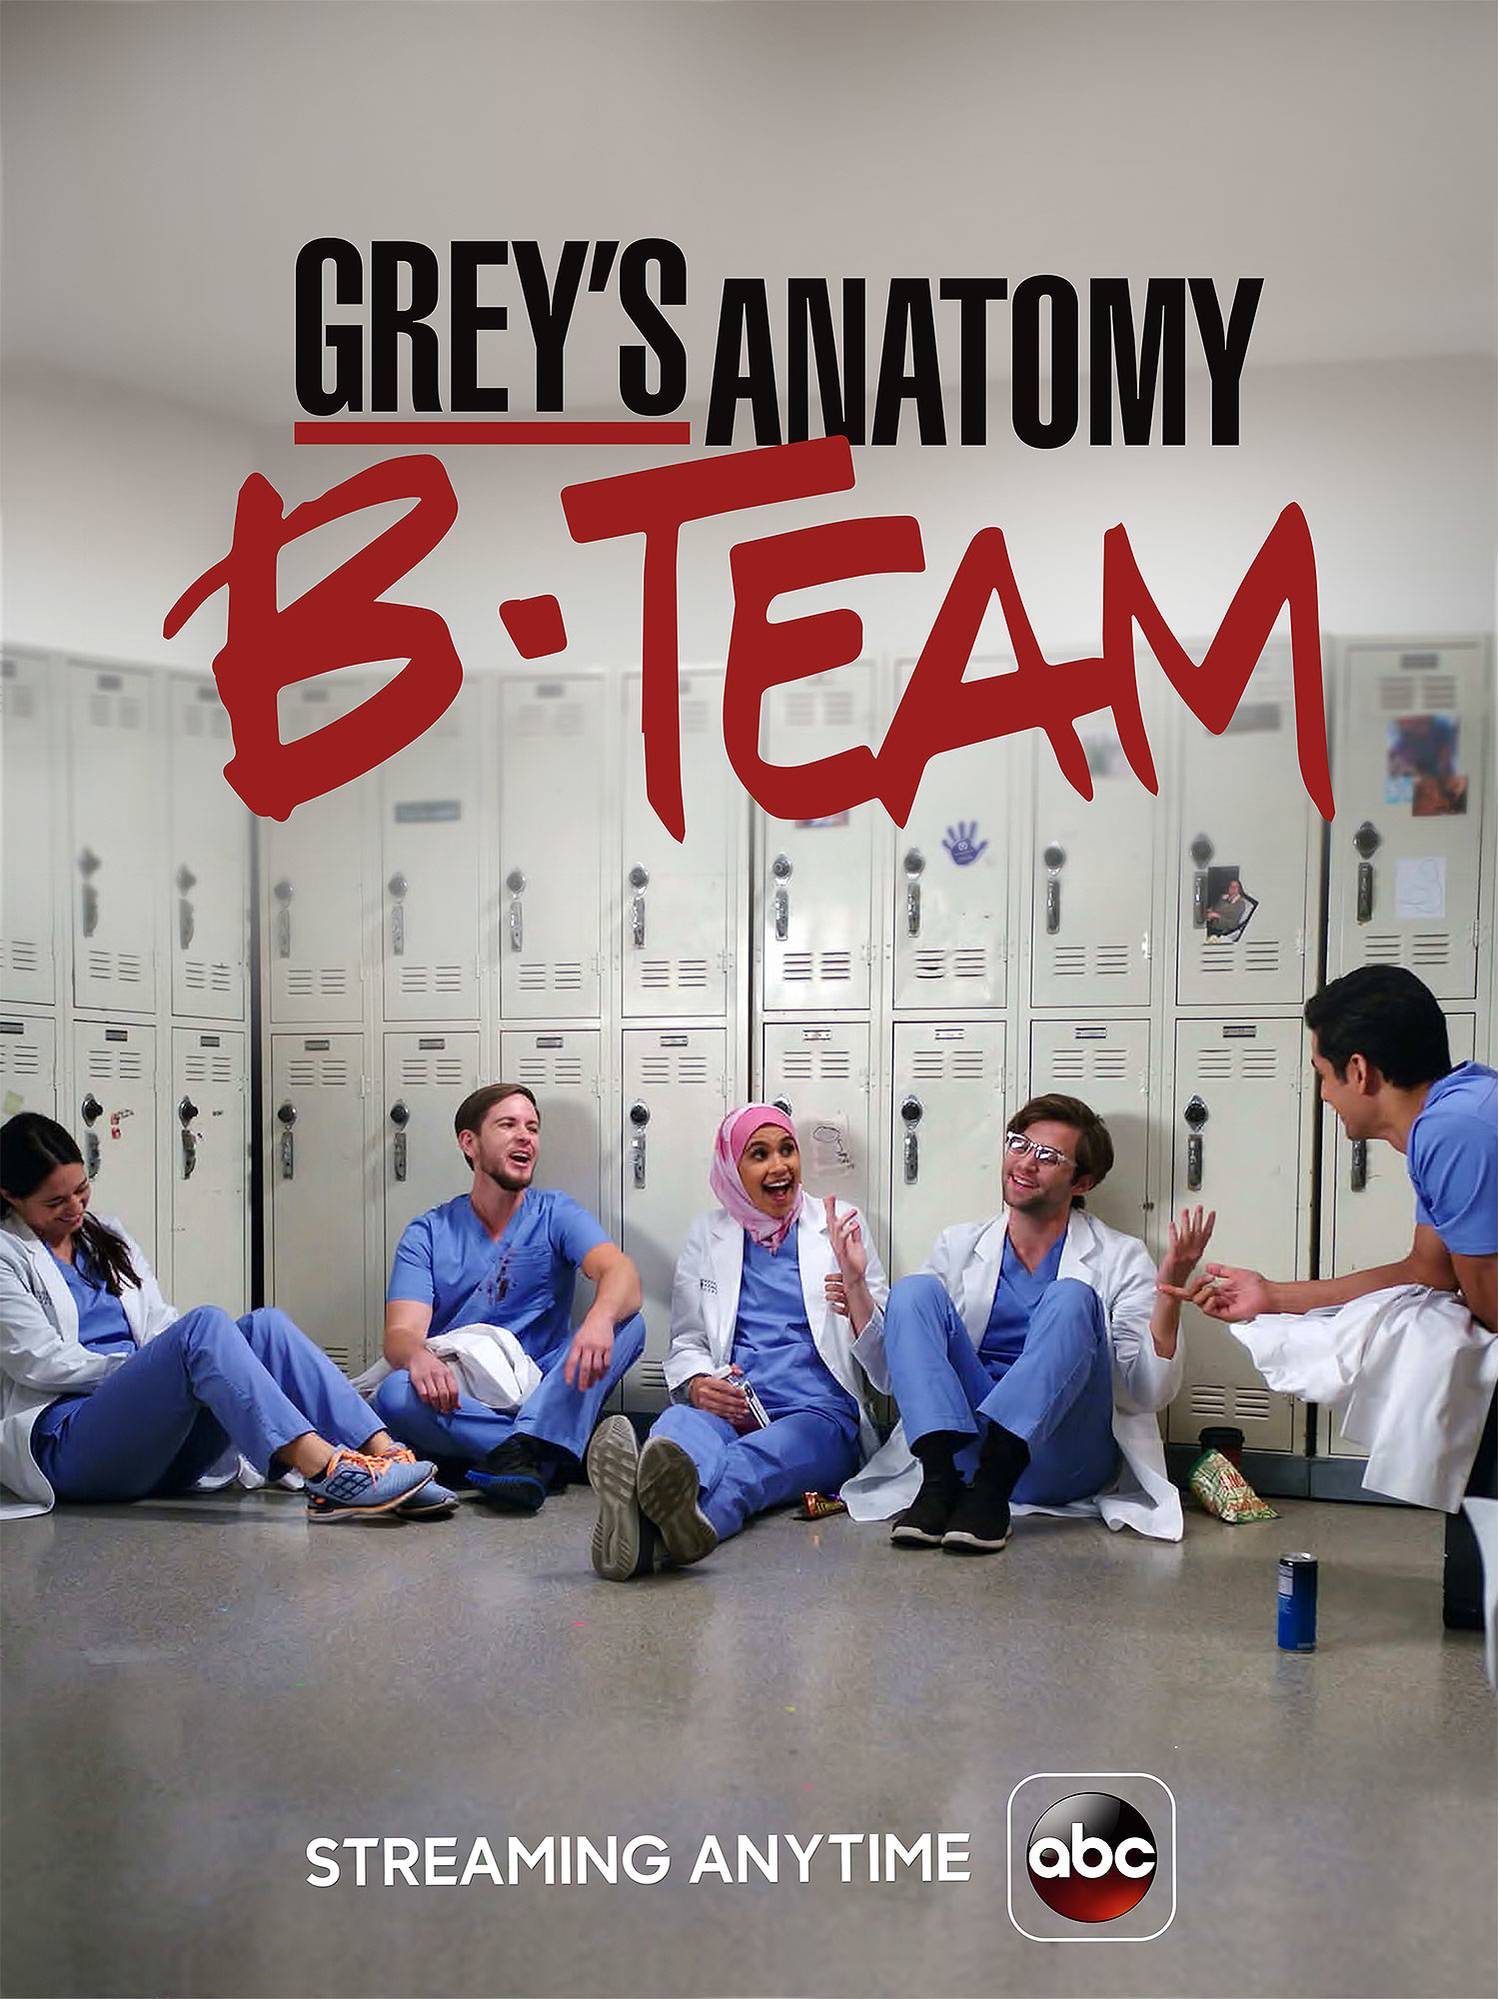 Grey's Anatomy: B-Team | Grey's Anatomy Universe Wiki | Fandom